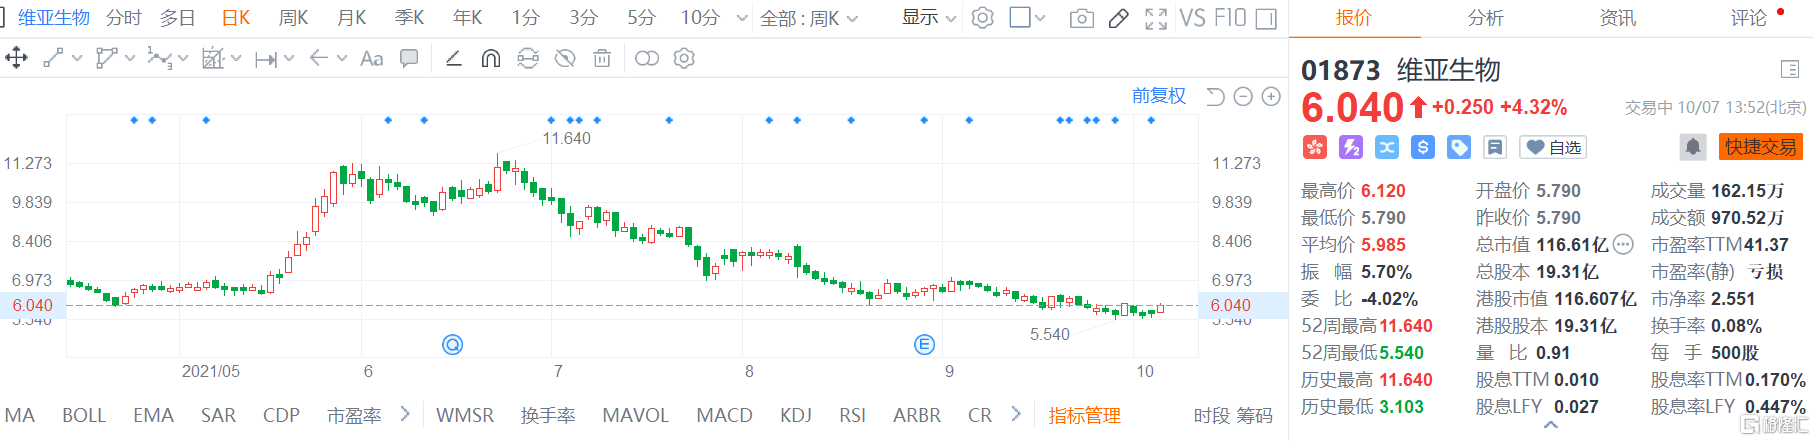 维亚生物(1873.HK)股价高位震荡，盘中最大涨幅近6%